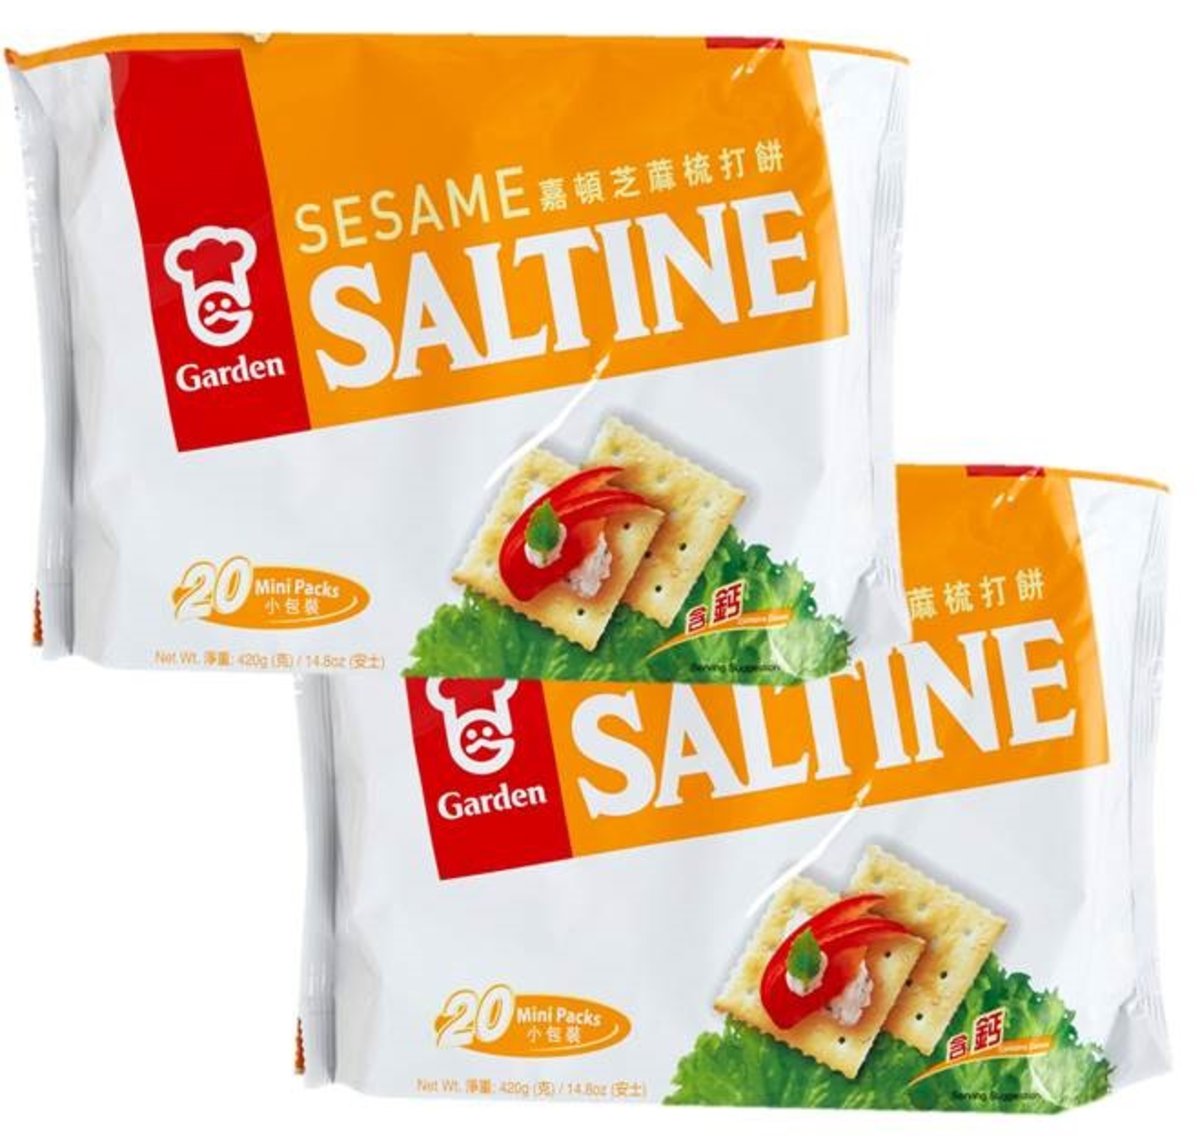 Sesame Saltine x2